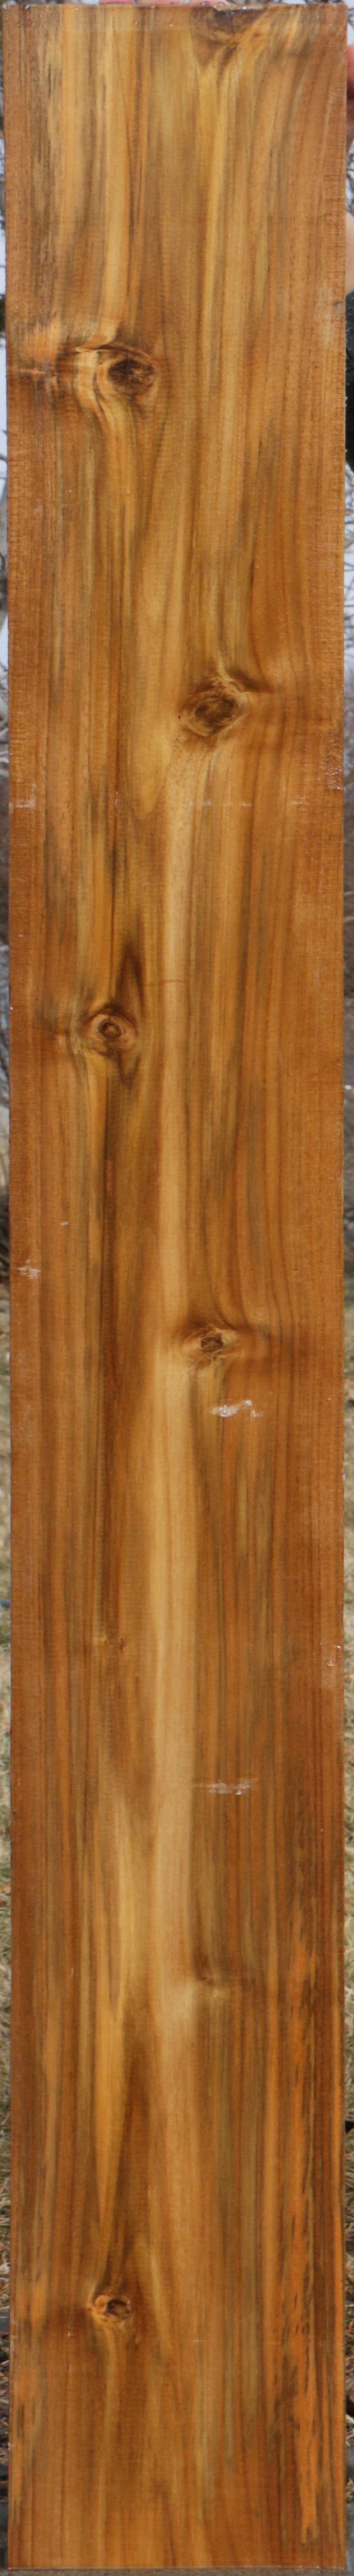 Teak Wood Strips/wood Beedings/recon Wood Timber/lumber - Buy Teak Wood  Strips/wood Beedings/recon Wood Timber/lumber Product on